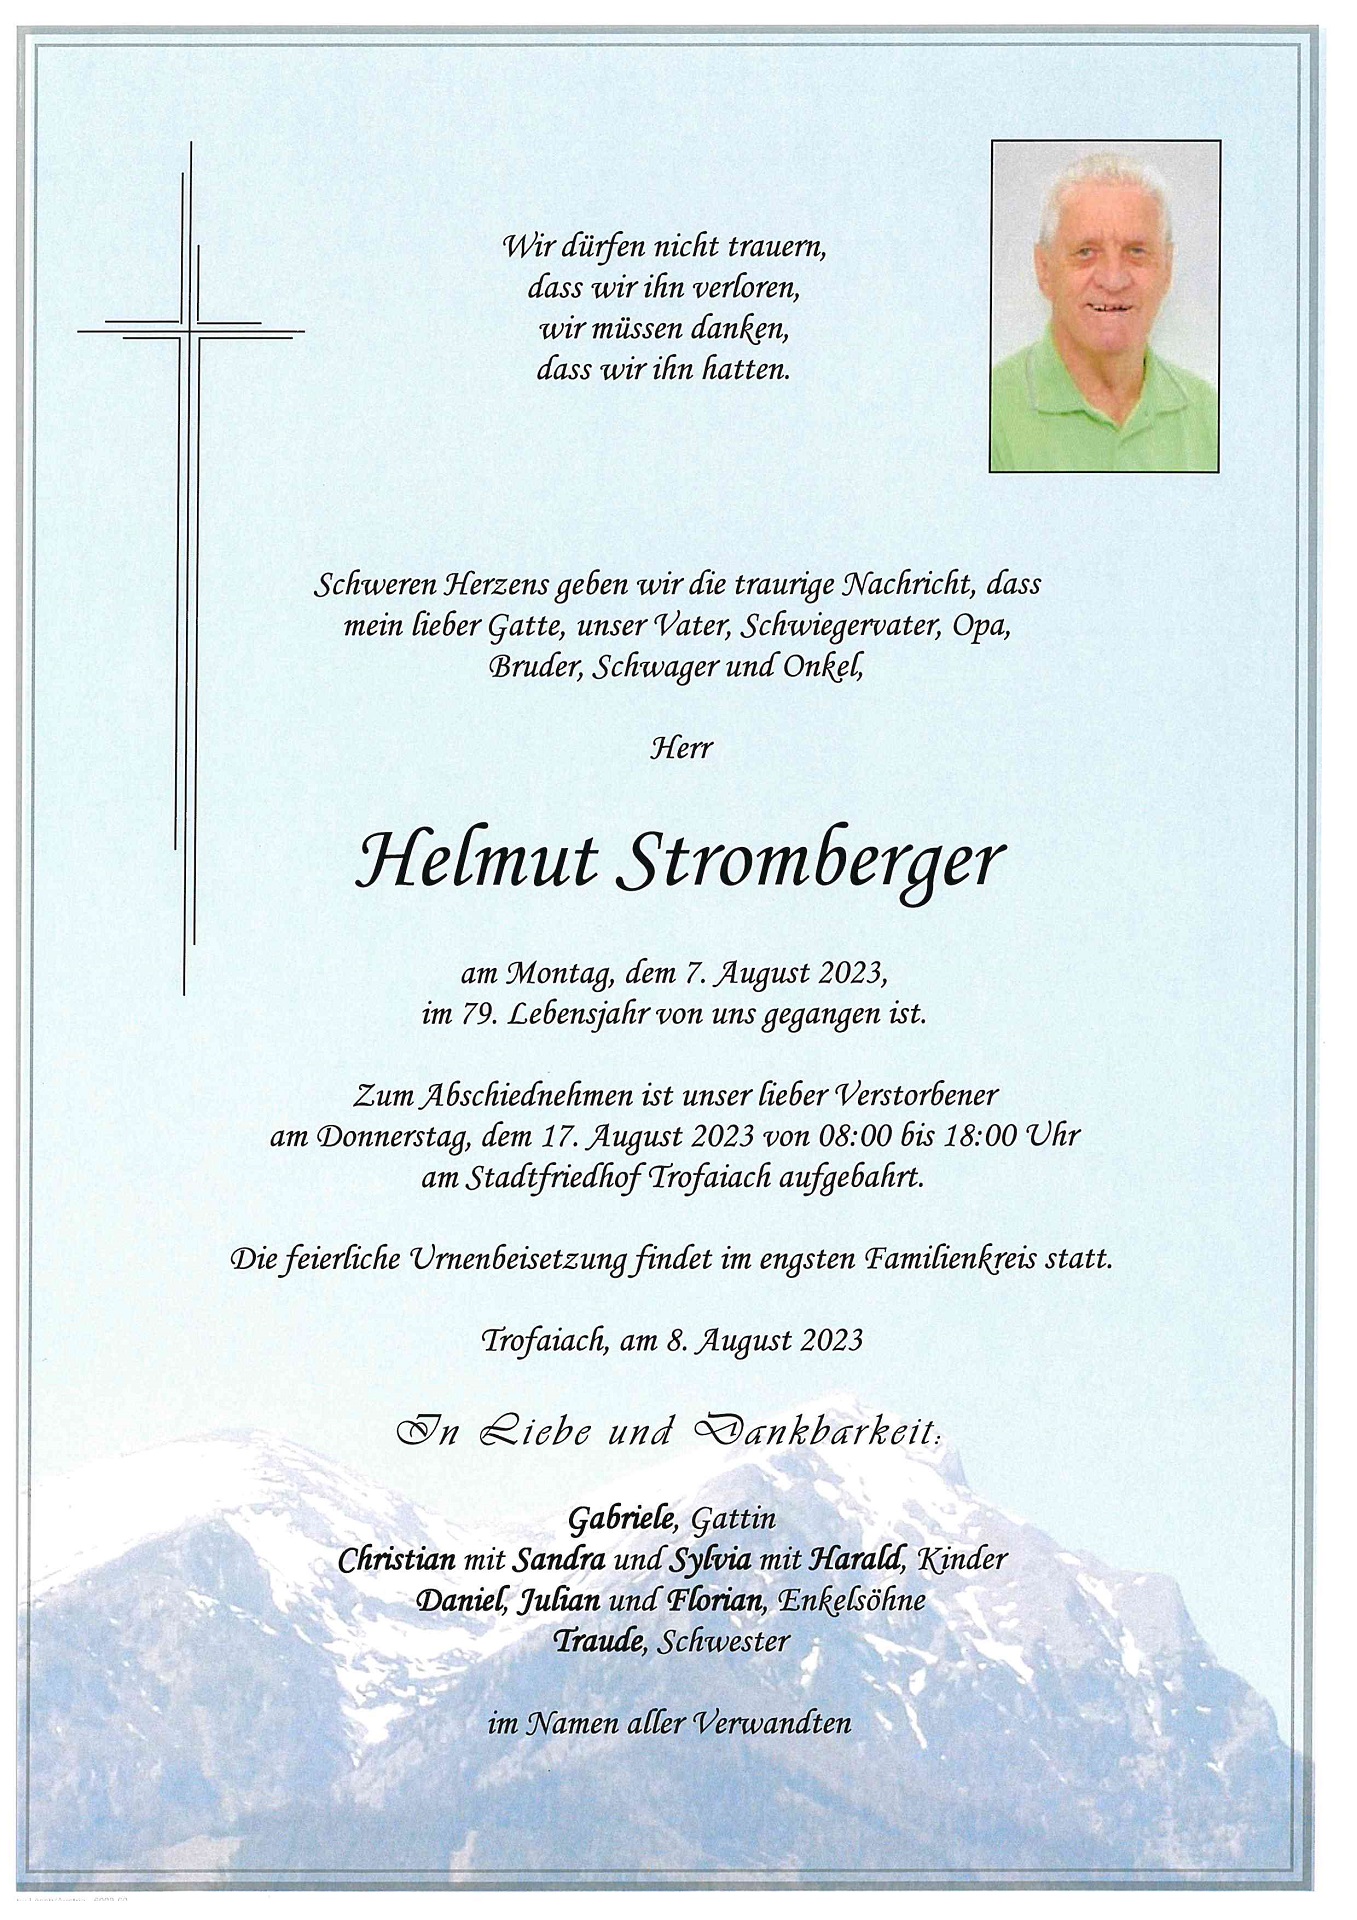 Stromberger Helmut